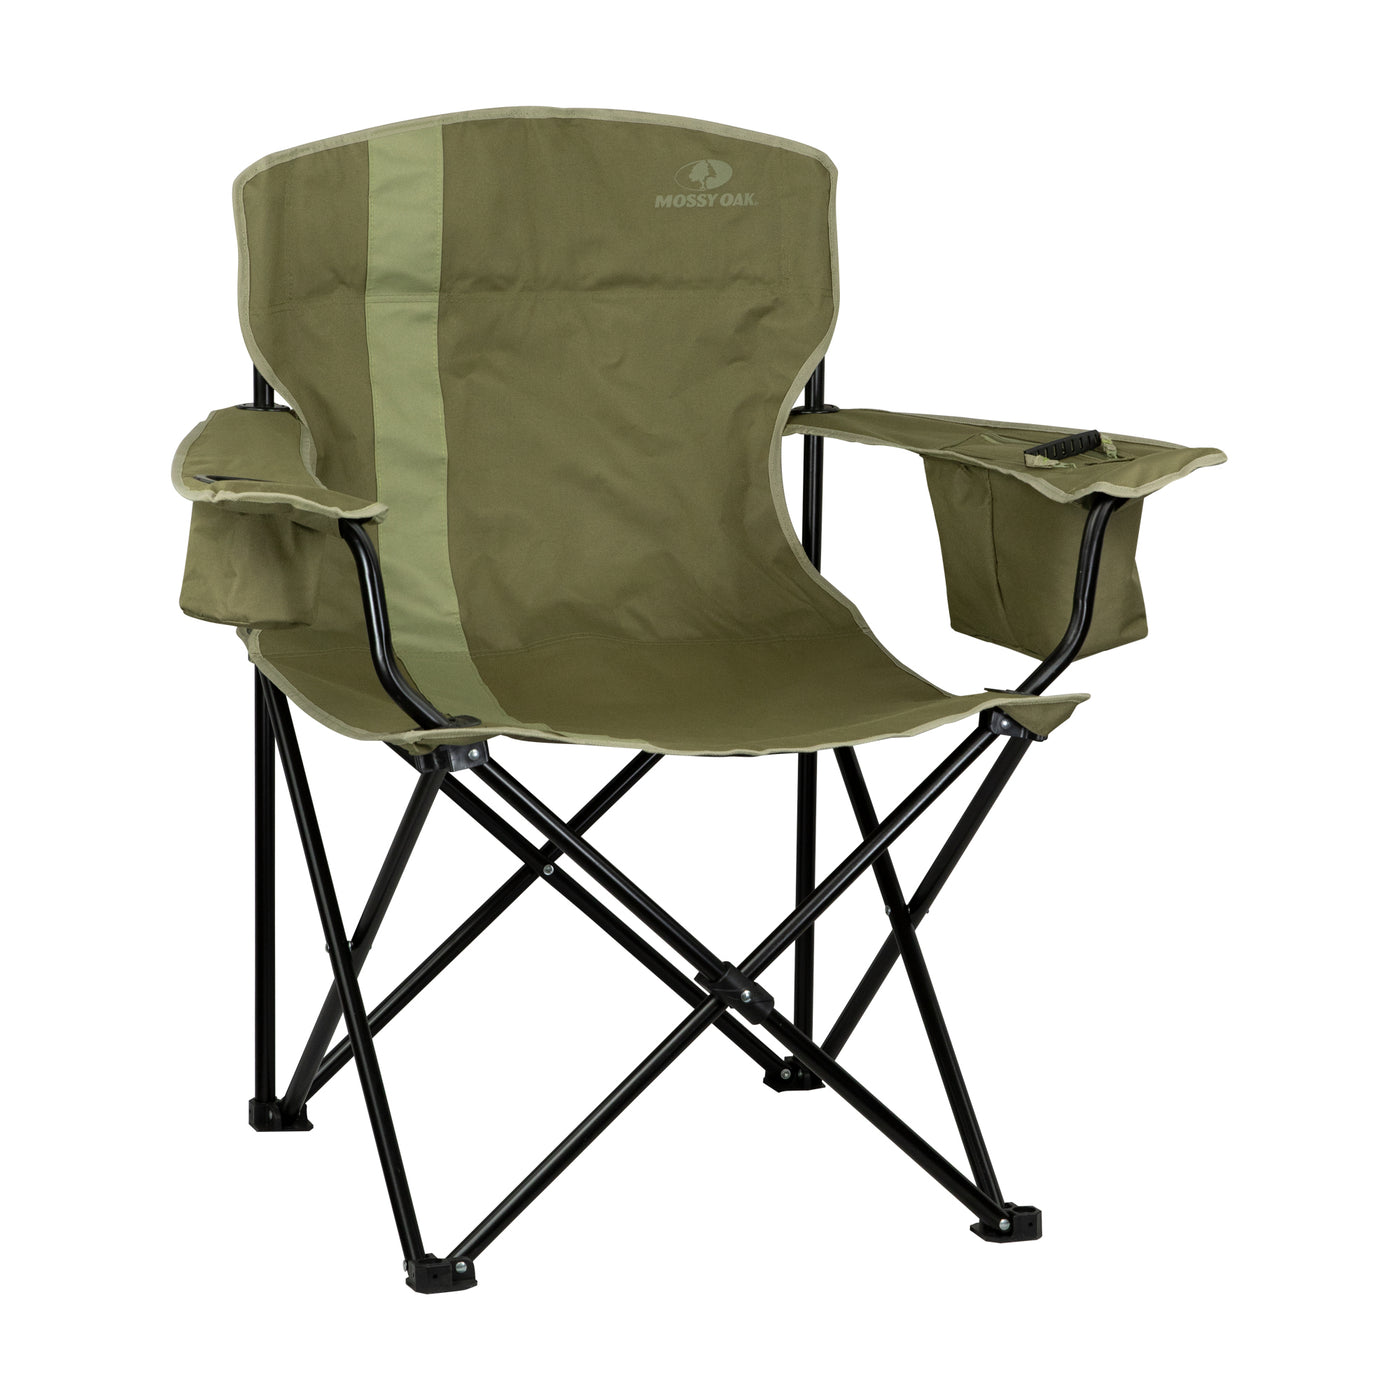 Mossy Oak Heavy Duty Folding Camping Chairs Lawn Chair